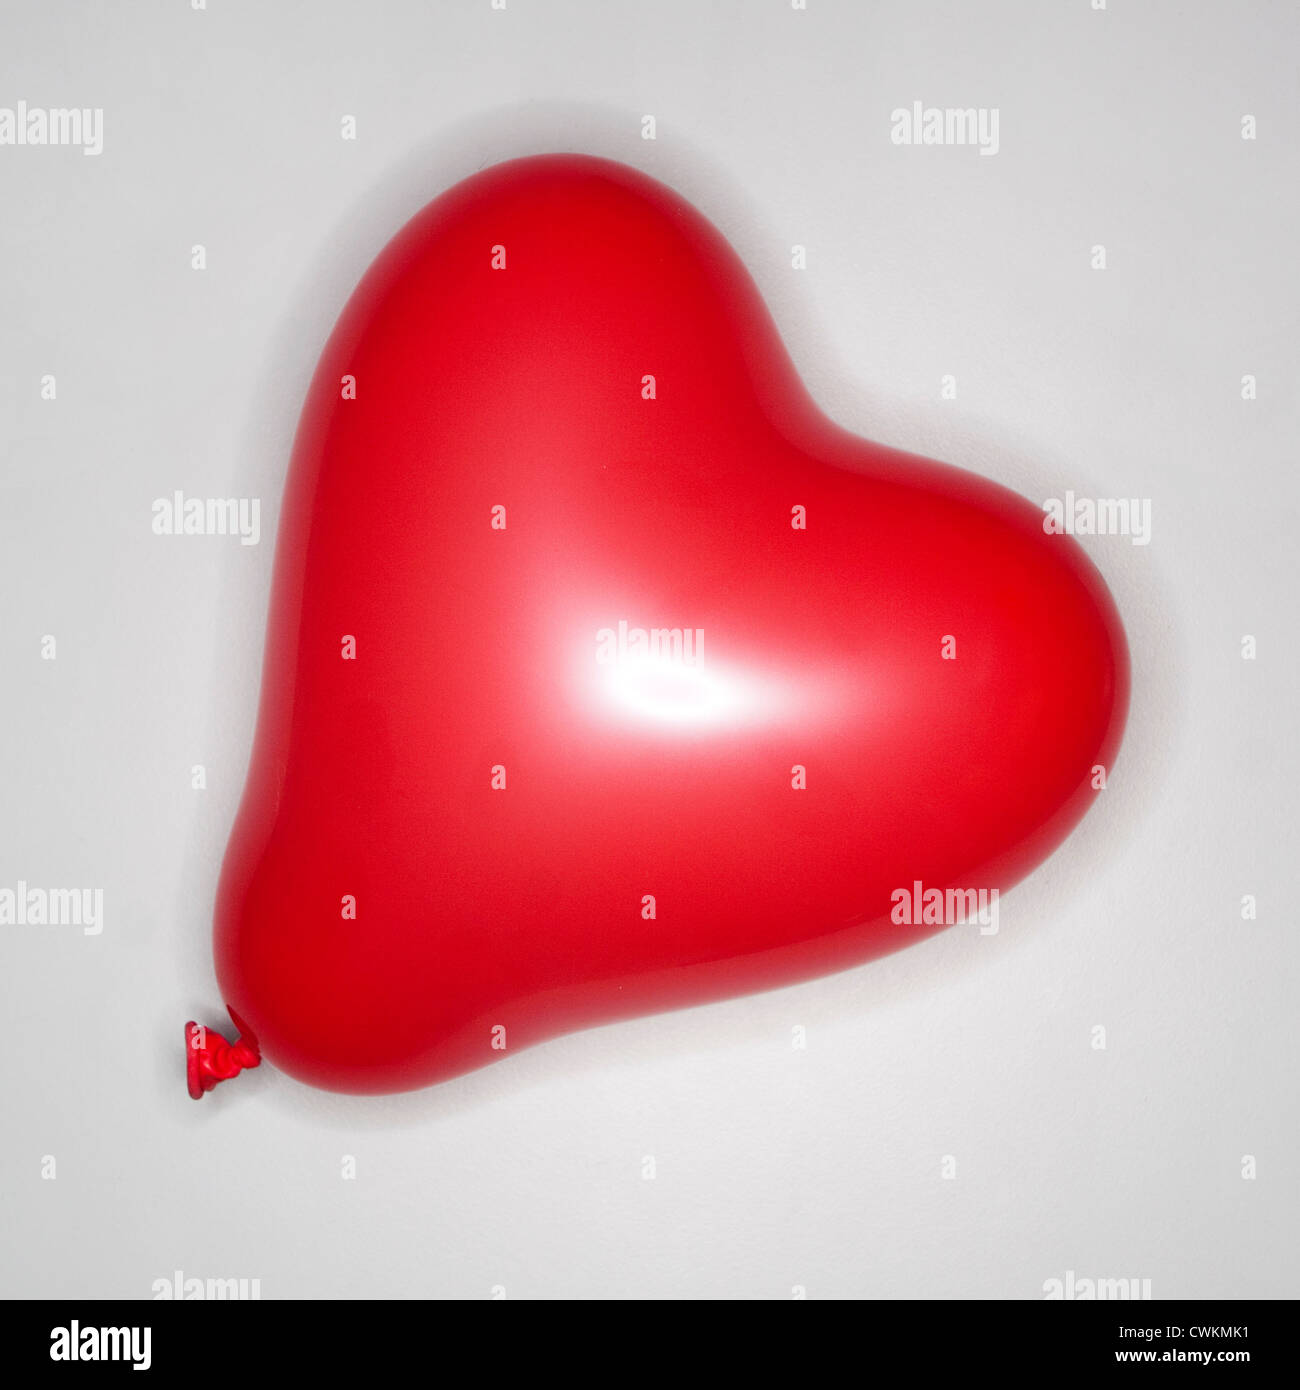 red heart balloon Stock Photo